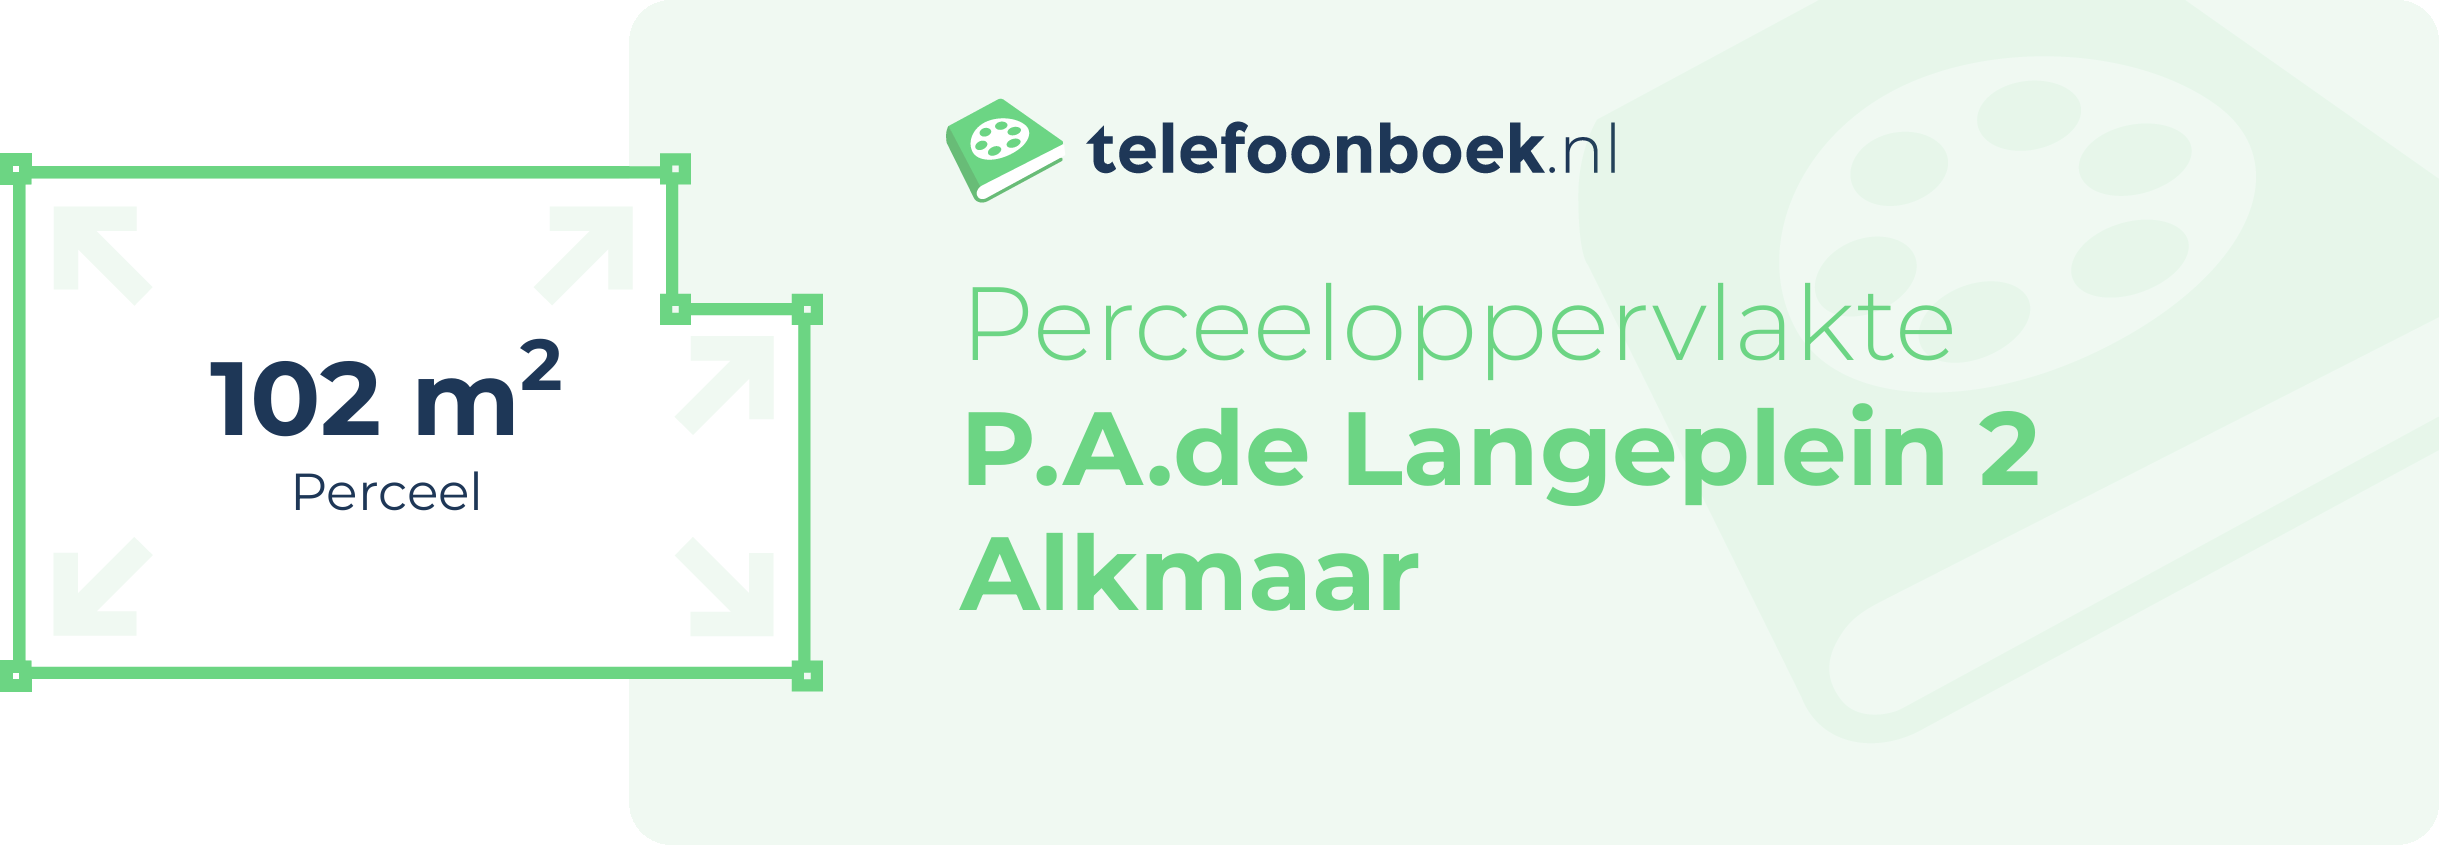 Perceeloppervlakte P.A.de Langeplein 2 Alkmaar